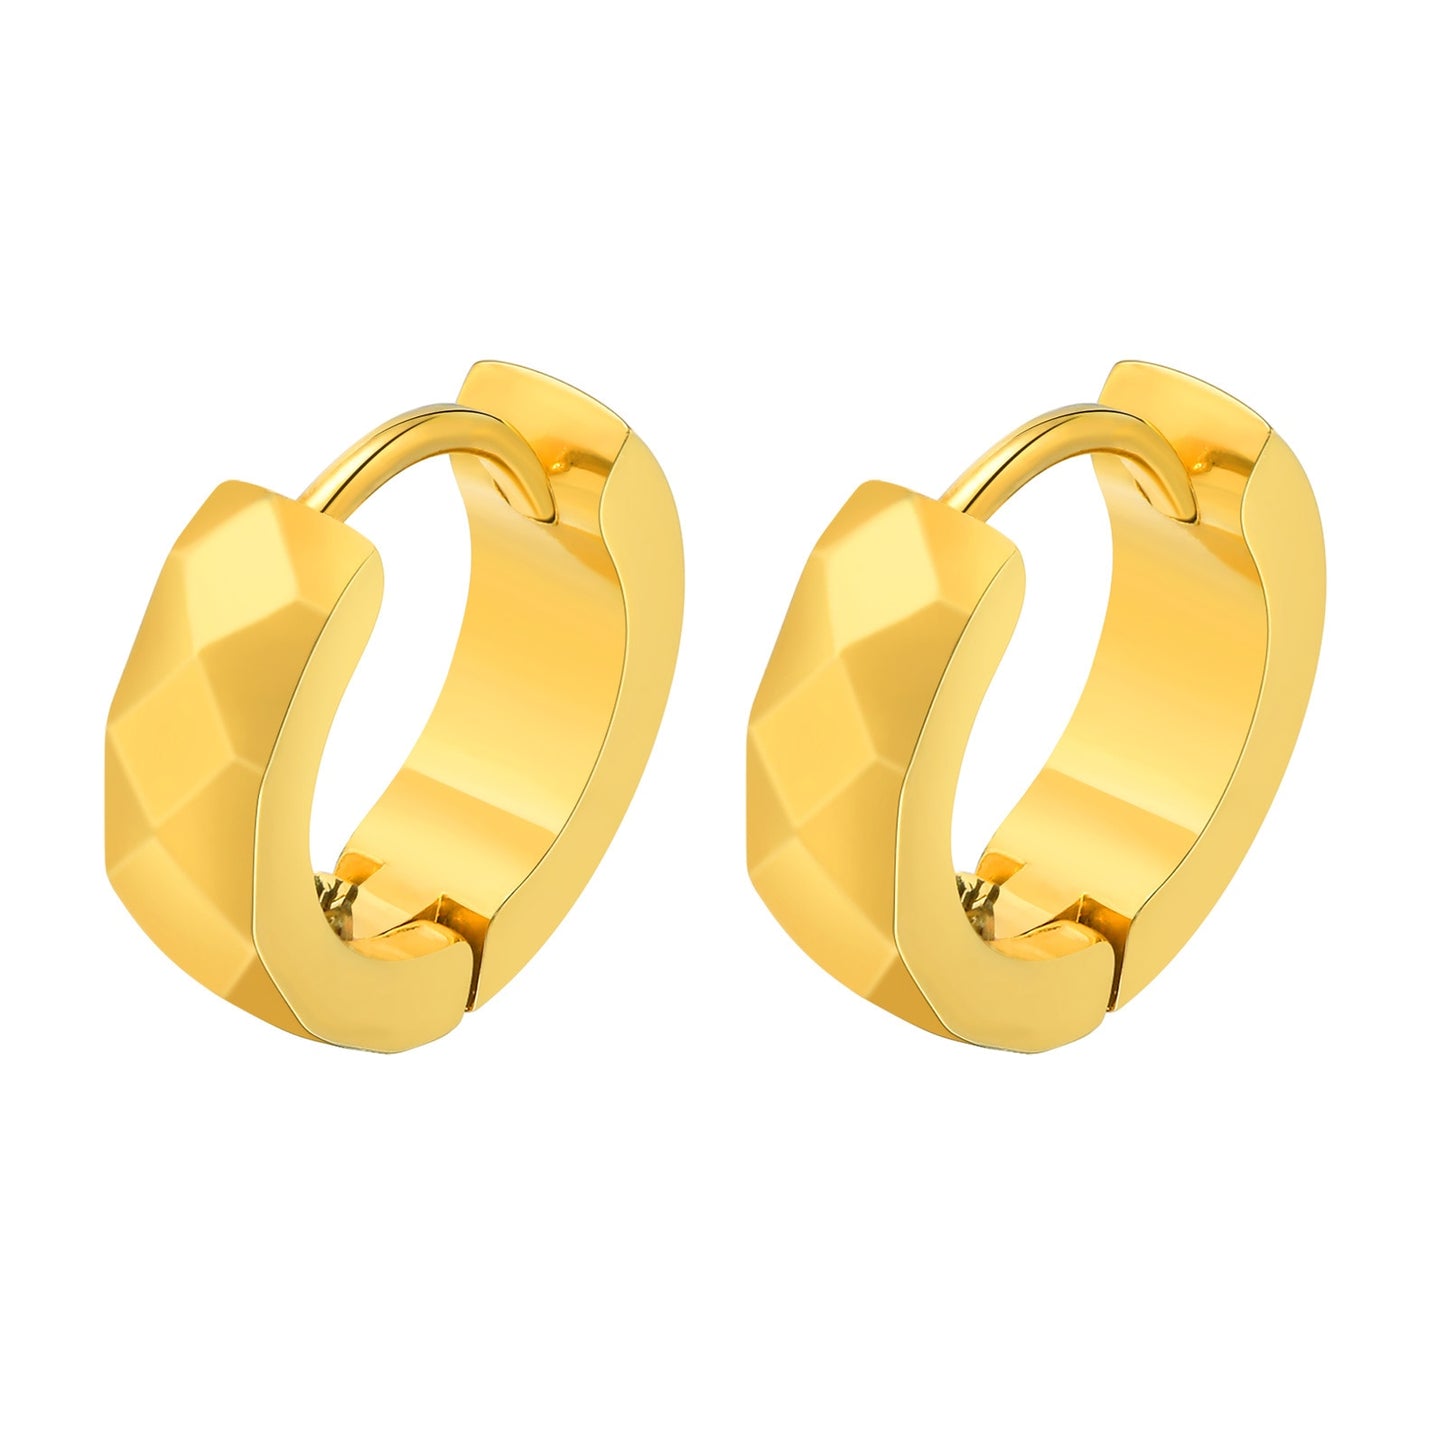 Aretes para mujeres y hombres Geometric Hoop Earrings for Men Women, Simple Waterproof Stainless Steel Huggie Earring, Black Silver Gold Color Options